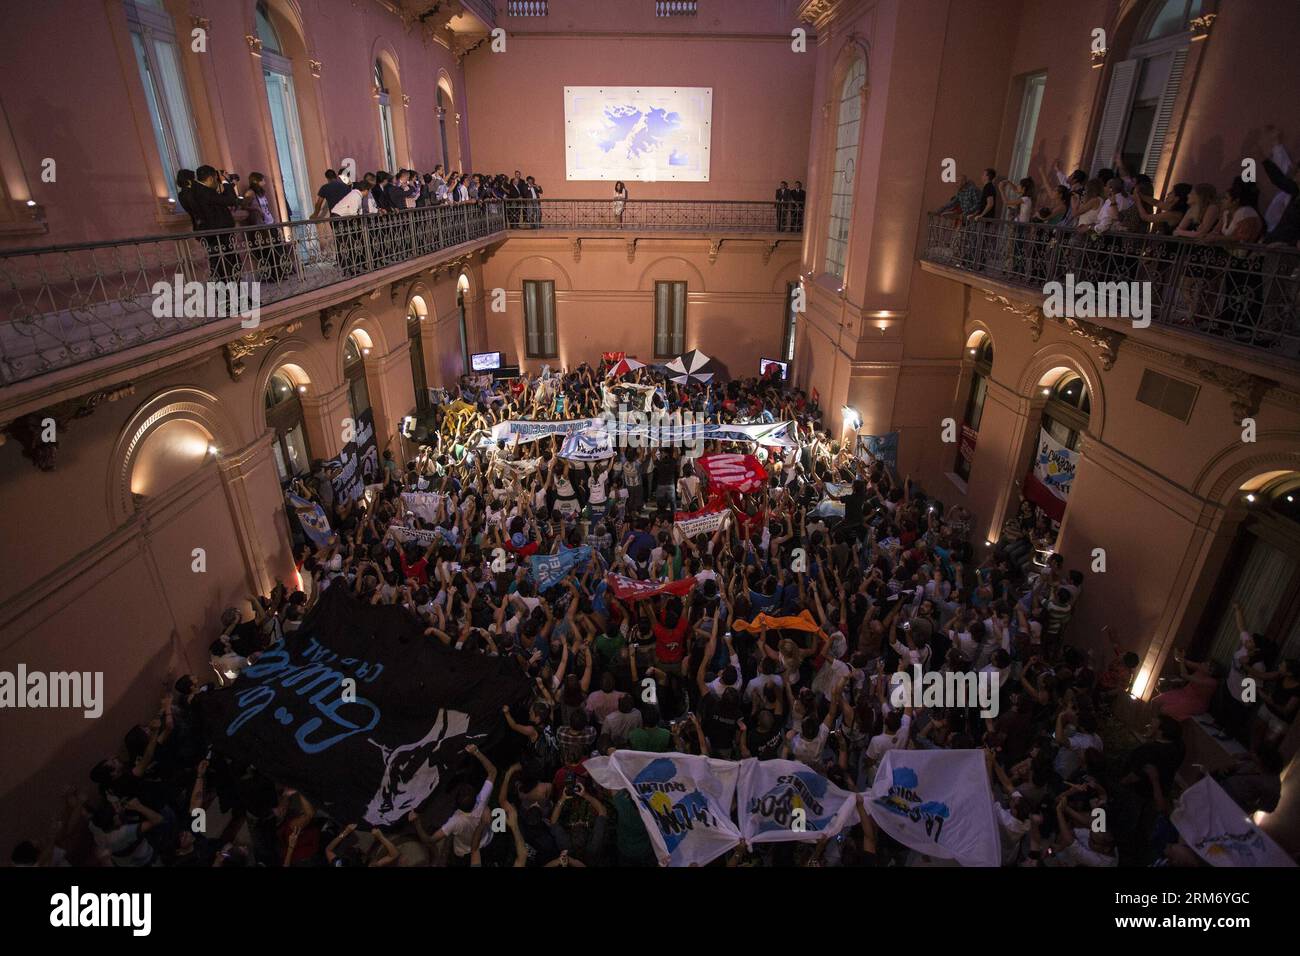 BUENOS AIRES, le 4 février 2014 - la Présidente de l Argentine, Cristina Fernandez de Kirchner, regarde les participants lors de l annonce de l augmentation des jubilations et de l affectation à l aide scolaire, au Palais du Gouvernement, à Buenos Aires, capitale de l Argentine, le 4 février 2014. (Xinhua/Martin Zabala) ARGENTINA-BUENOS AIRES-POLITICS-FERNANDEZ PUBLICATIONxNOTxINxCHN Buenos Aires Fév 4 2014 Argentine S Président Cristina Fernandez de Kirchner regarde les participants lors de l'ANNONCE de la plupart des jubilations et l'affectation pour l'aide scolaire dans le Palais du Gouvernement à Buenos Aires ville C Banque D'Images